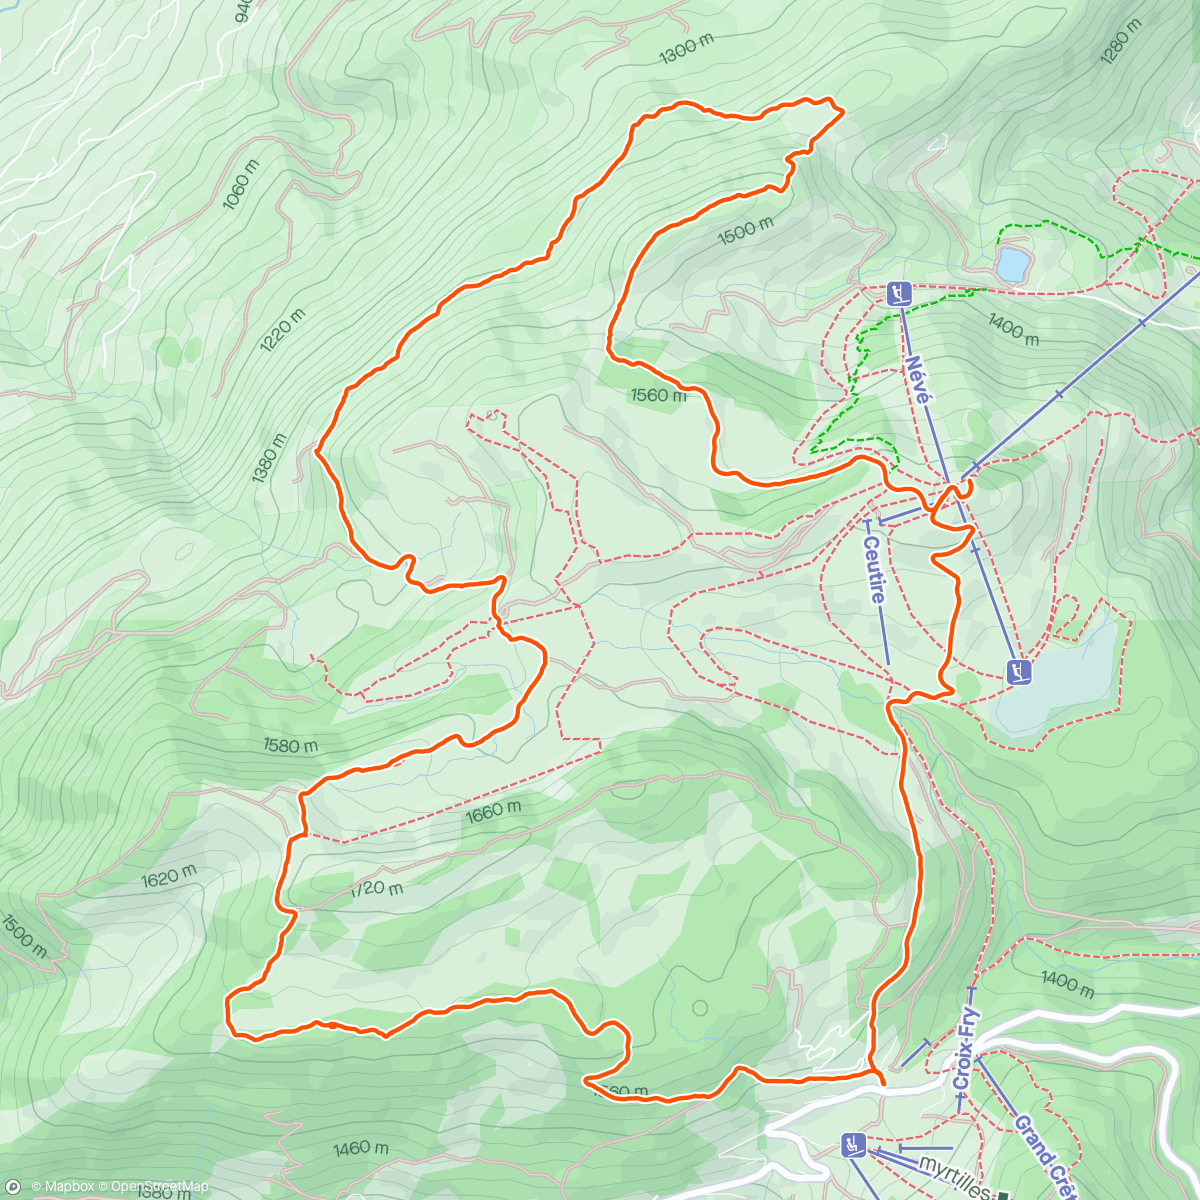 「Marche trail plateau de Beauregard」活動的地圖